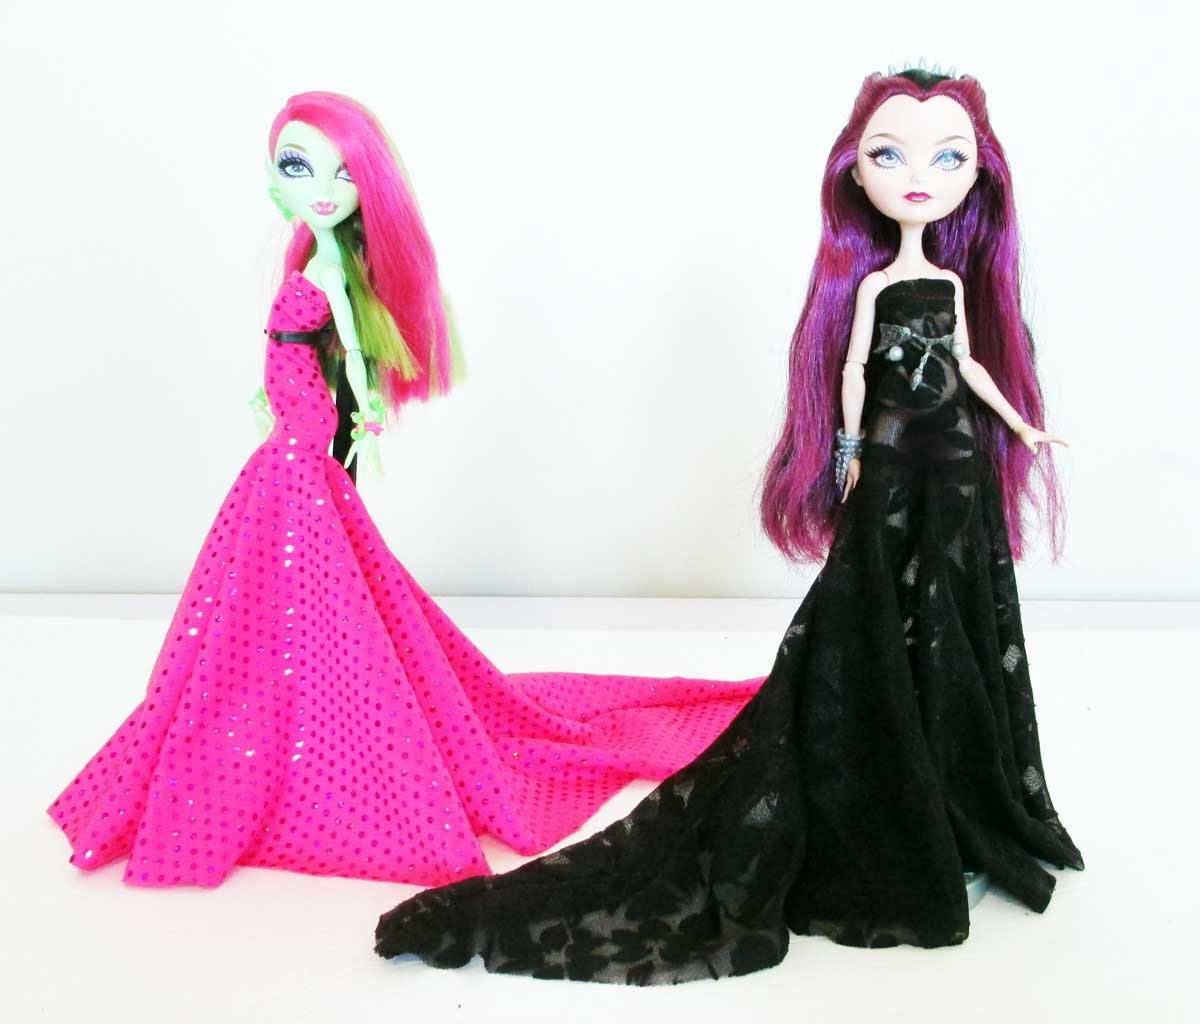 Búp bê barbie có show truyền hình thực tế thi thiết kế thời trang